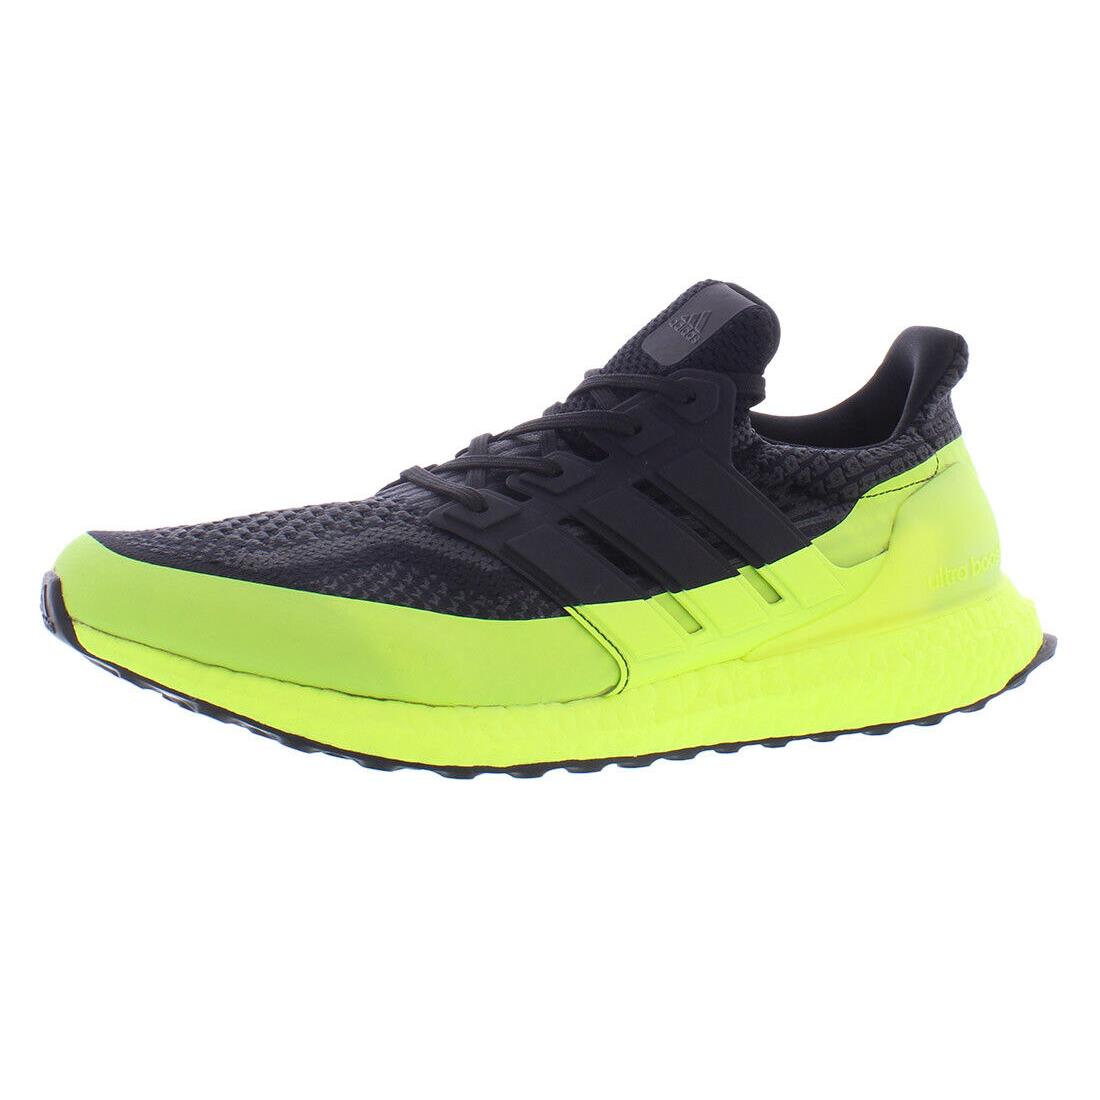 Adidas Ultraboost 5.0 Dna Mens Shoes - Black/Volt, Main: Black